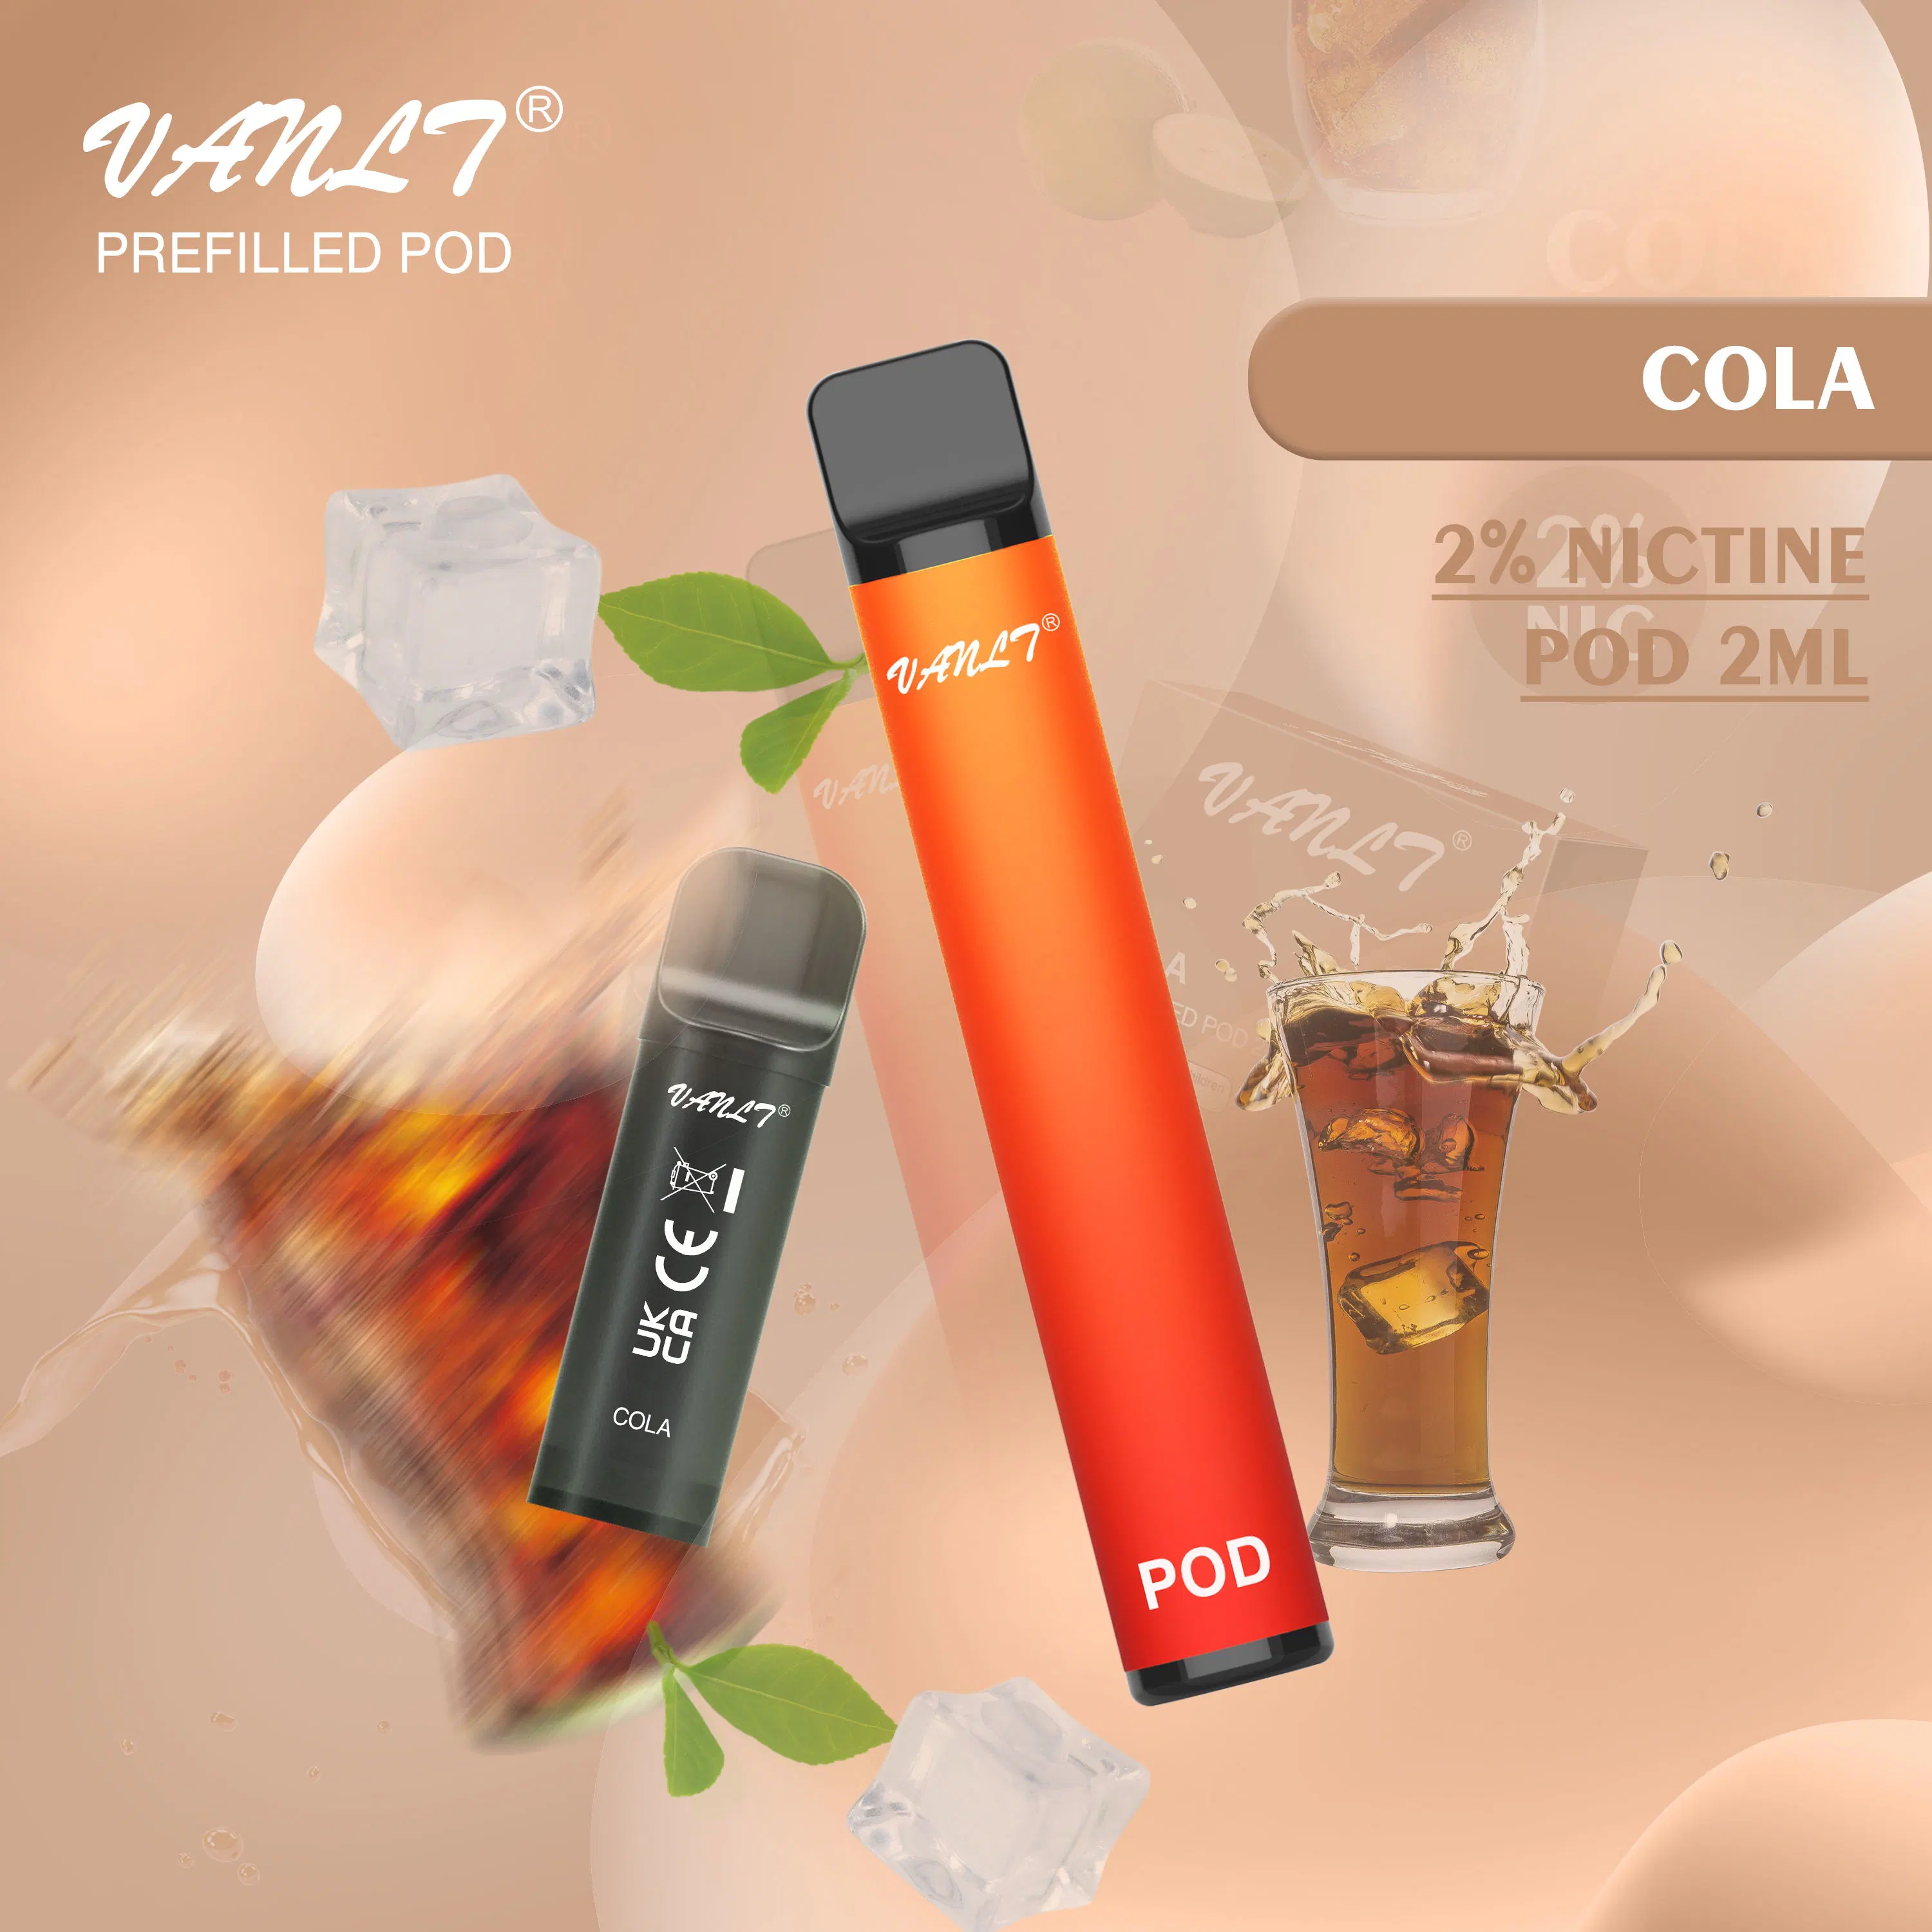 Vanlt Venta caliente Cigarrillo Electrónico Desechable narguile Shisha Pen 2ml 800 inhalaciones Cola Tpd Certificación